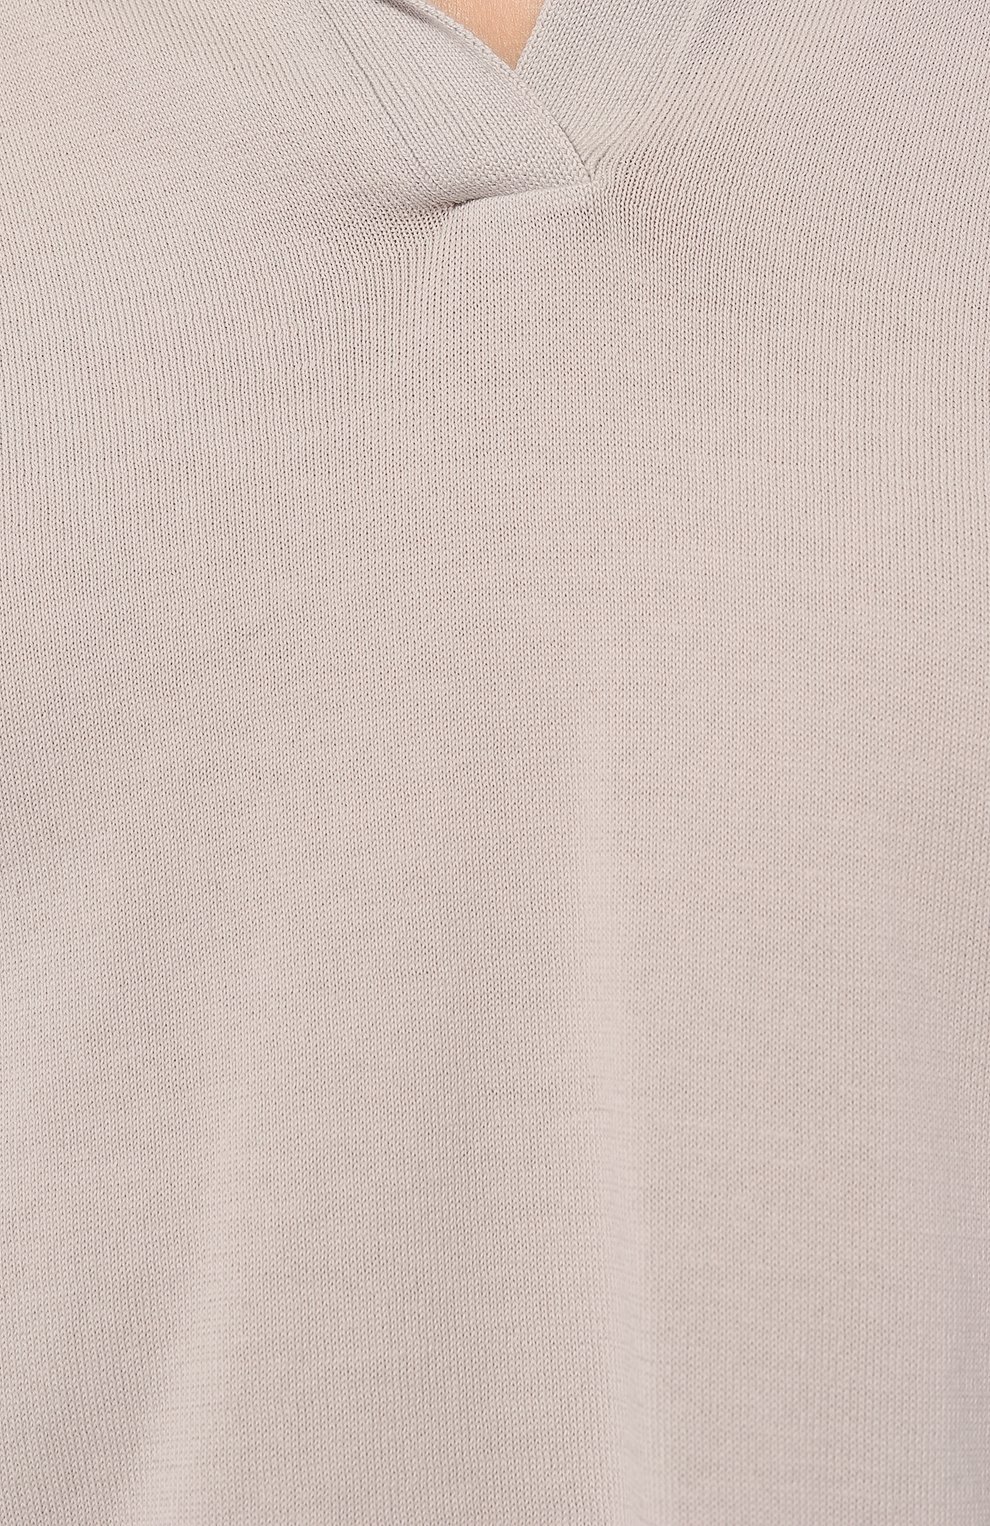 Хлопковый пуловер-поло Gran Sasso 57288/14005, цвет серый, размер 42 57288/14005 - фото 5